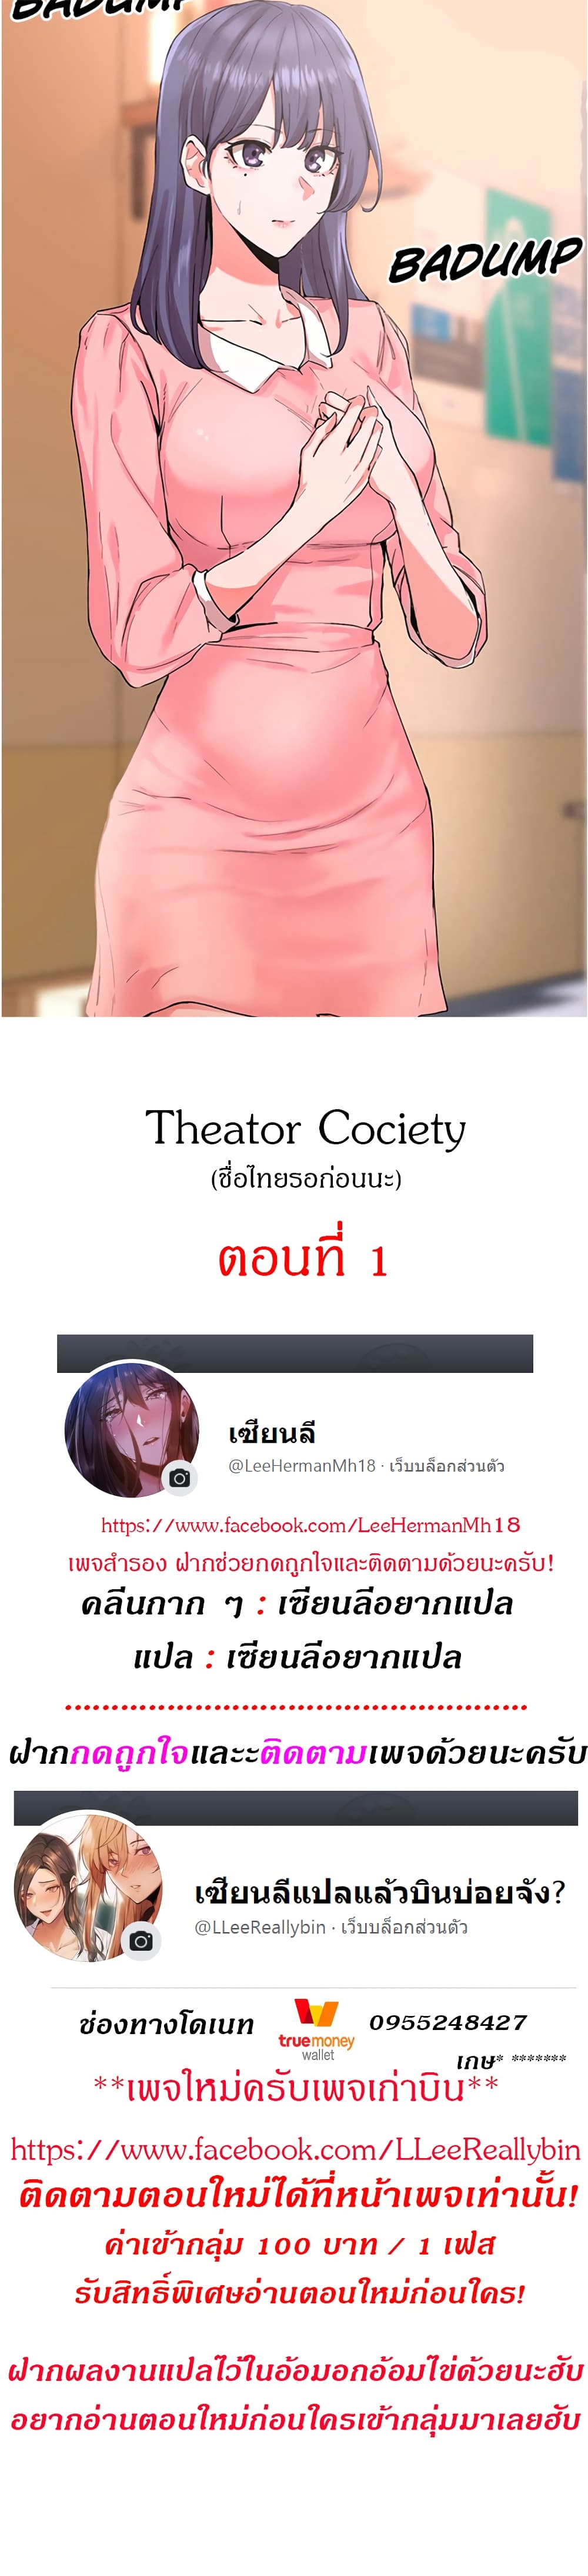 Theater Society 1 (1)